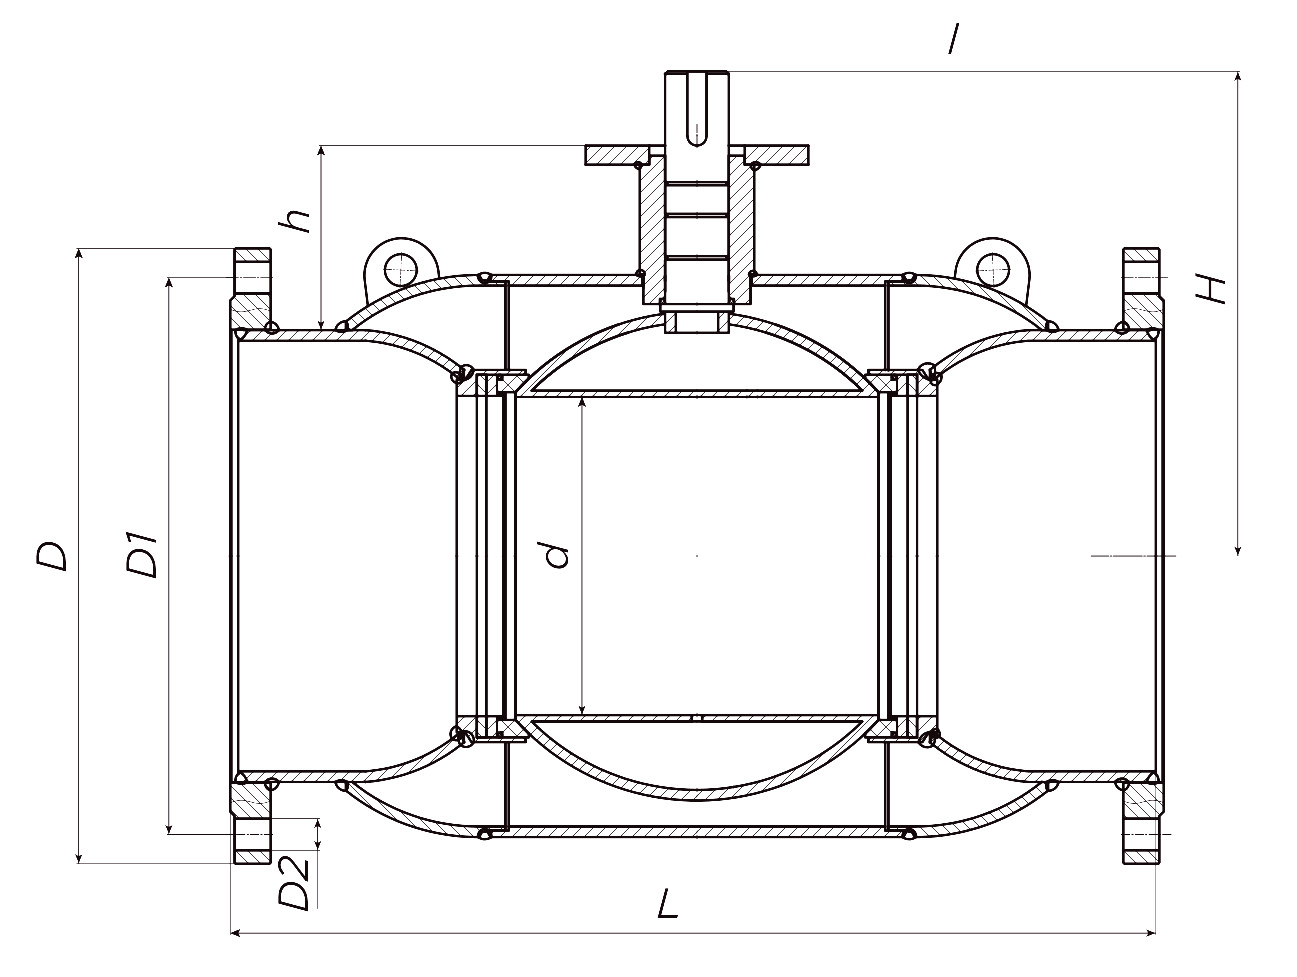 Кран шаровой ALSO КШ.Ф.Р.350.16-01 Ду350 Ру16 стандартнопроходной, присоединение - фланцевое, корпус - сталь 20, уплотнение - PTFE, под редуктор/привод